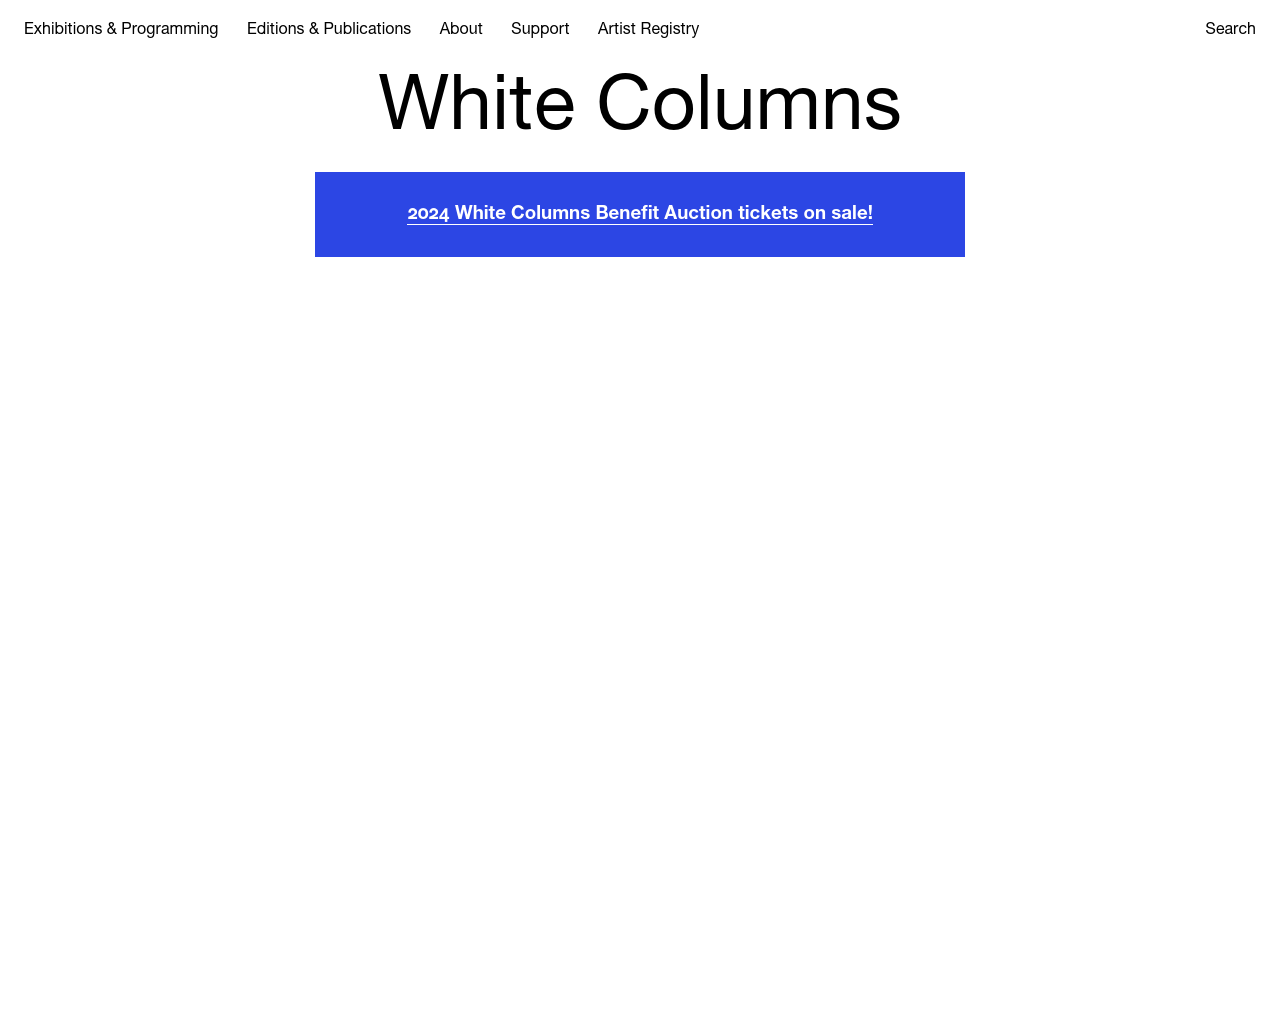 whitecolumns.org